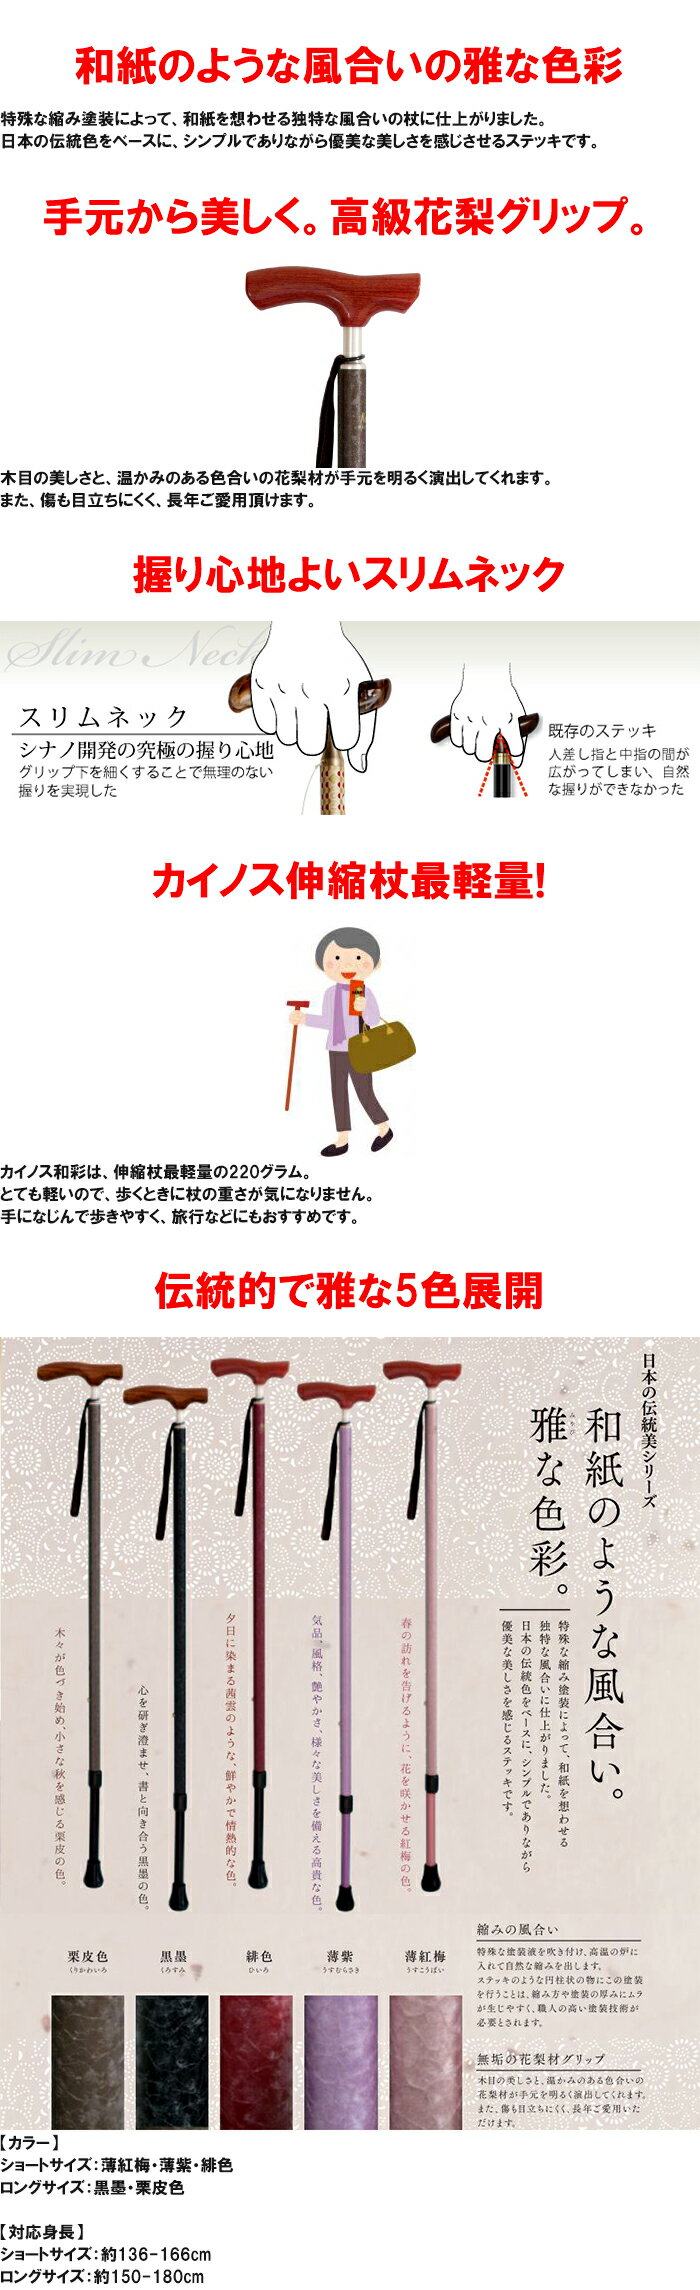 【頑張って送料無料！】安心の日本の老舗SINANO製の歩行杖日本の伝統美シリーズ【カイノス 和彩 WASAI】日本人に合わせた構造の高品質な杖伝統的で雅な5色展開（栗皮色、黒墨、緋色、薄紫、薄紅梅）